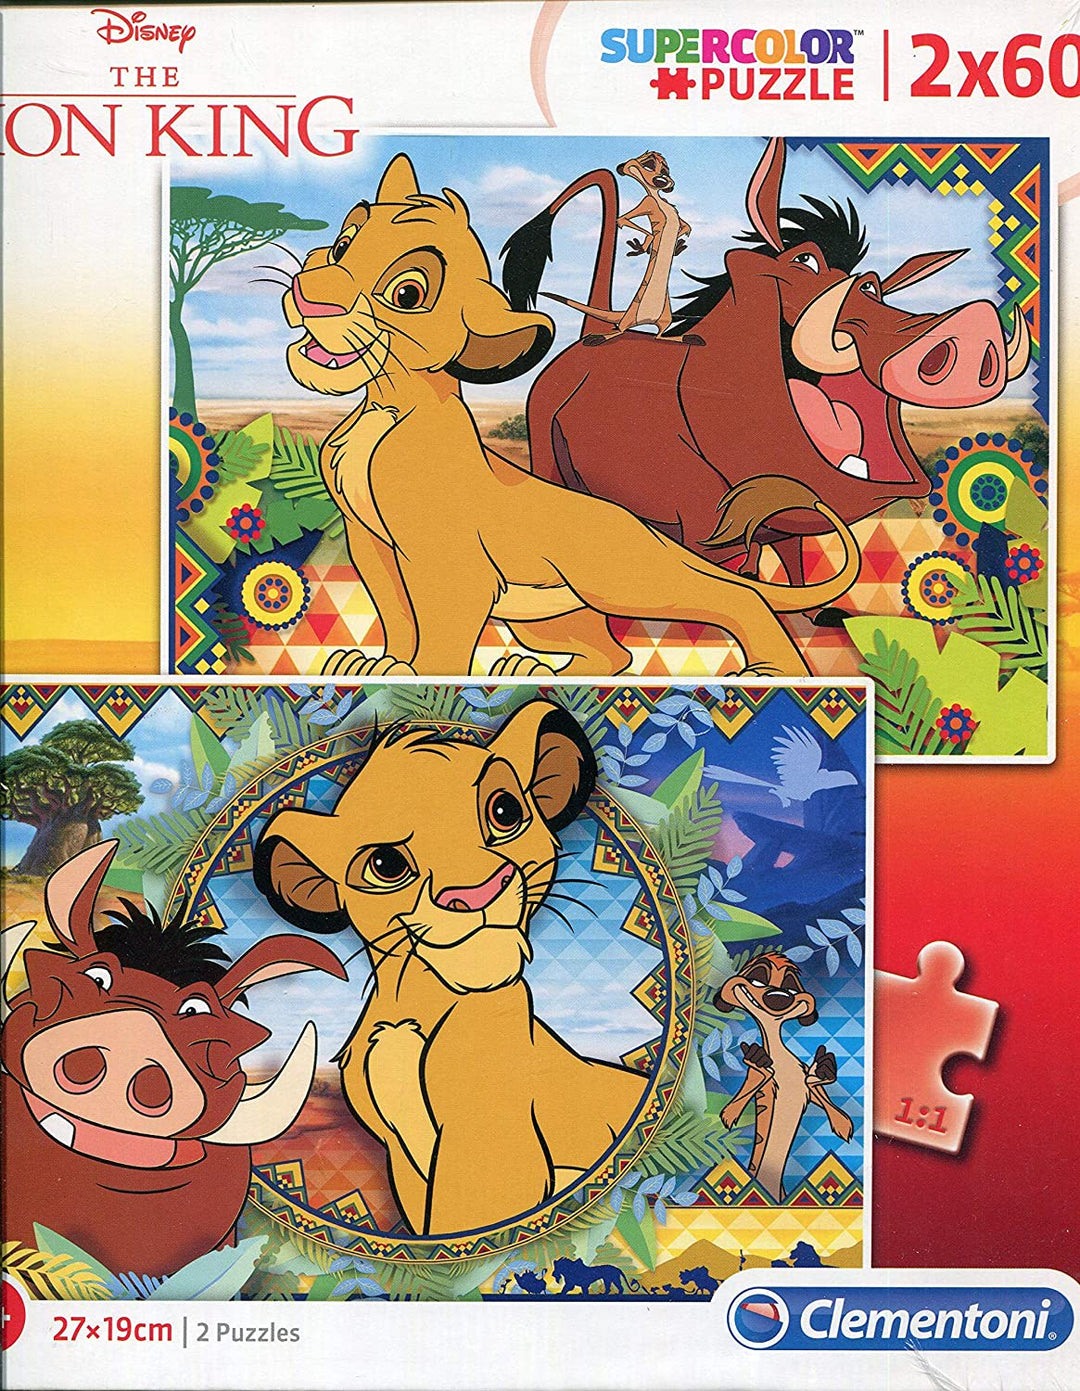 Clementoni - 21604 - Supercolor Puzzle for children - Disney Lion King - 2 x 60 Pieces Puzzle